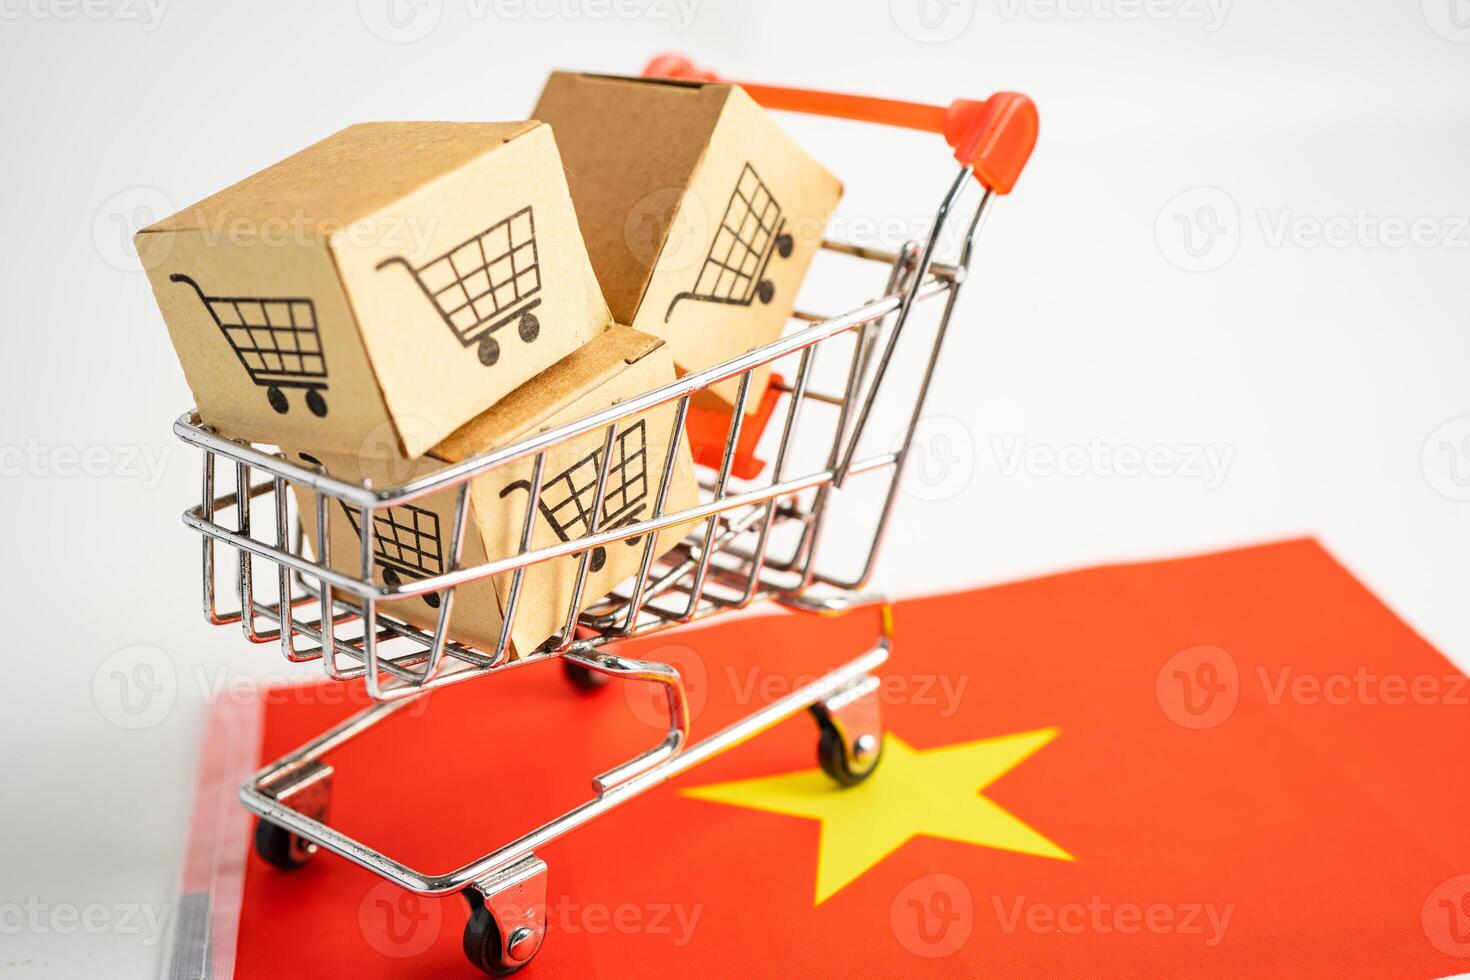 låda med shopping online kundvagn logotyp och vietnam flagga, import export shopping online eller handel finans leverans service butik produkt frakt, handel, leverantör koncept. foto